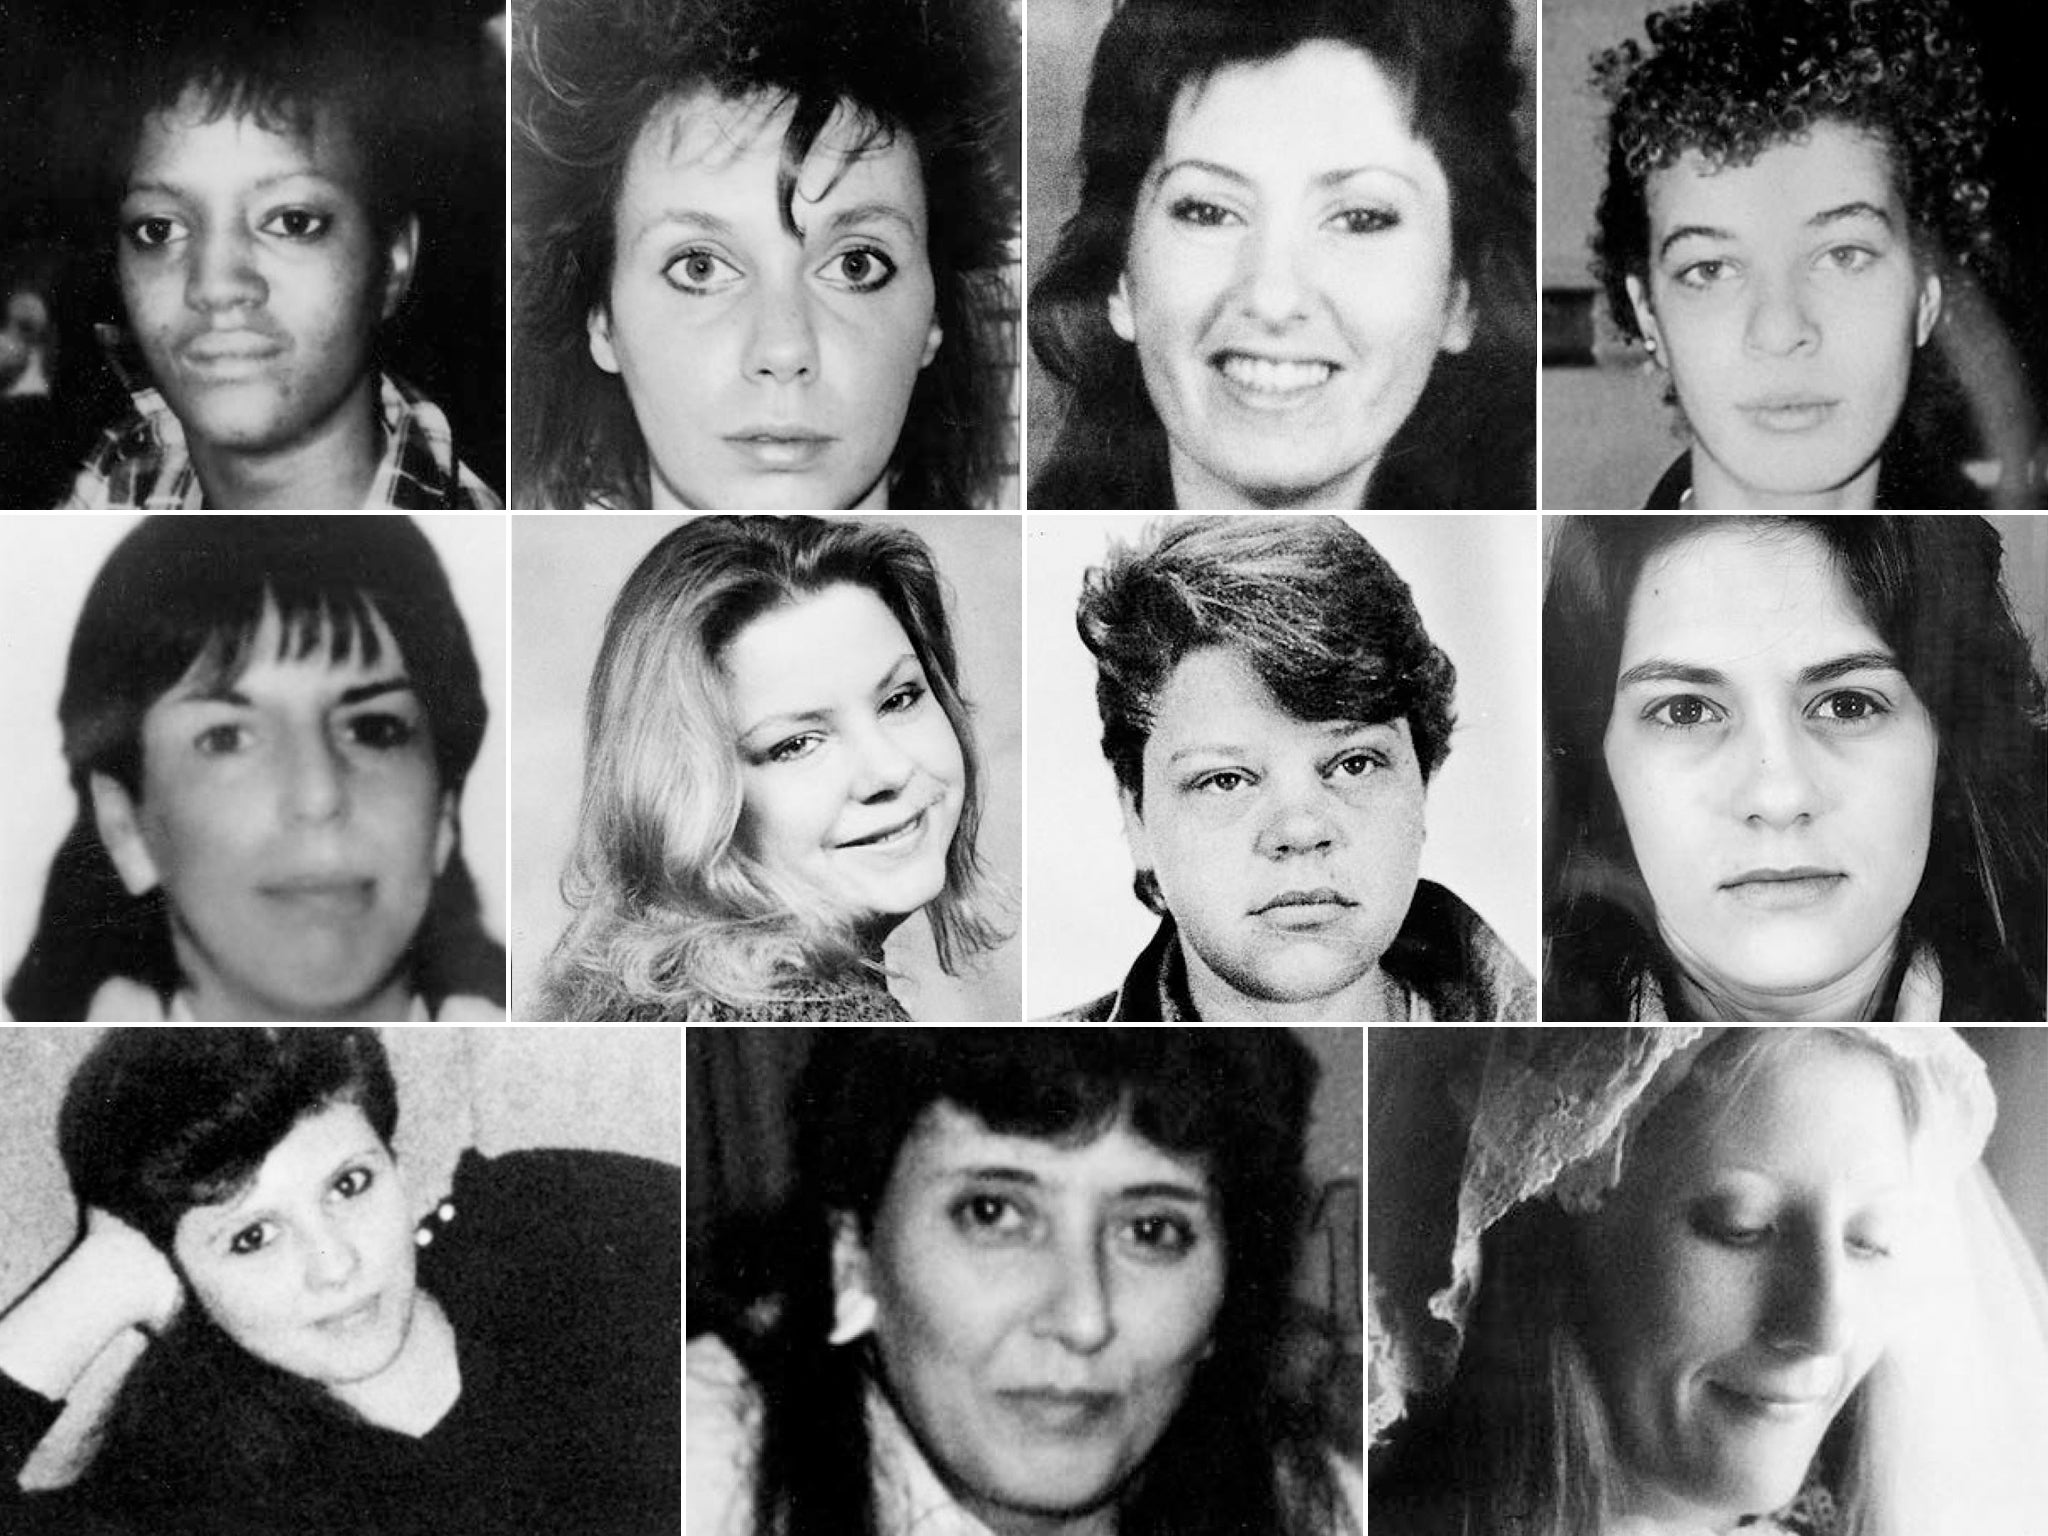 Se cree que el asesino en serie de la autopista de New Bedford mató al menos a once mujeres; nueve fueron encontradas abandonadas en las principales carreteras cercanas a la ciudad de Massachusetts en torno a 1988/89